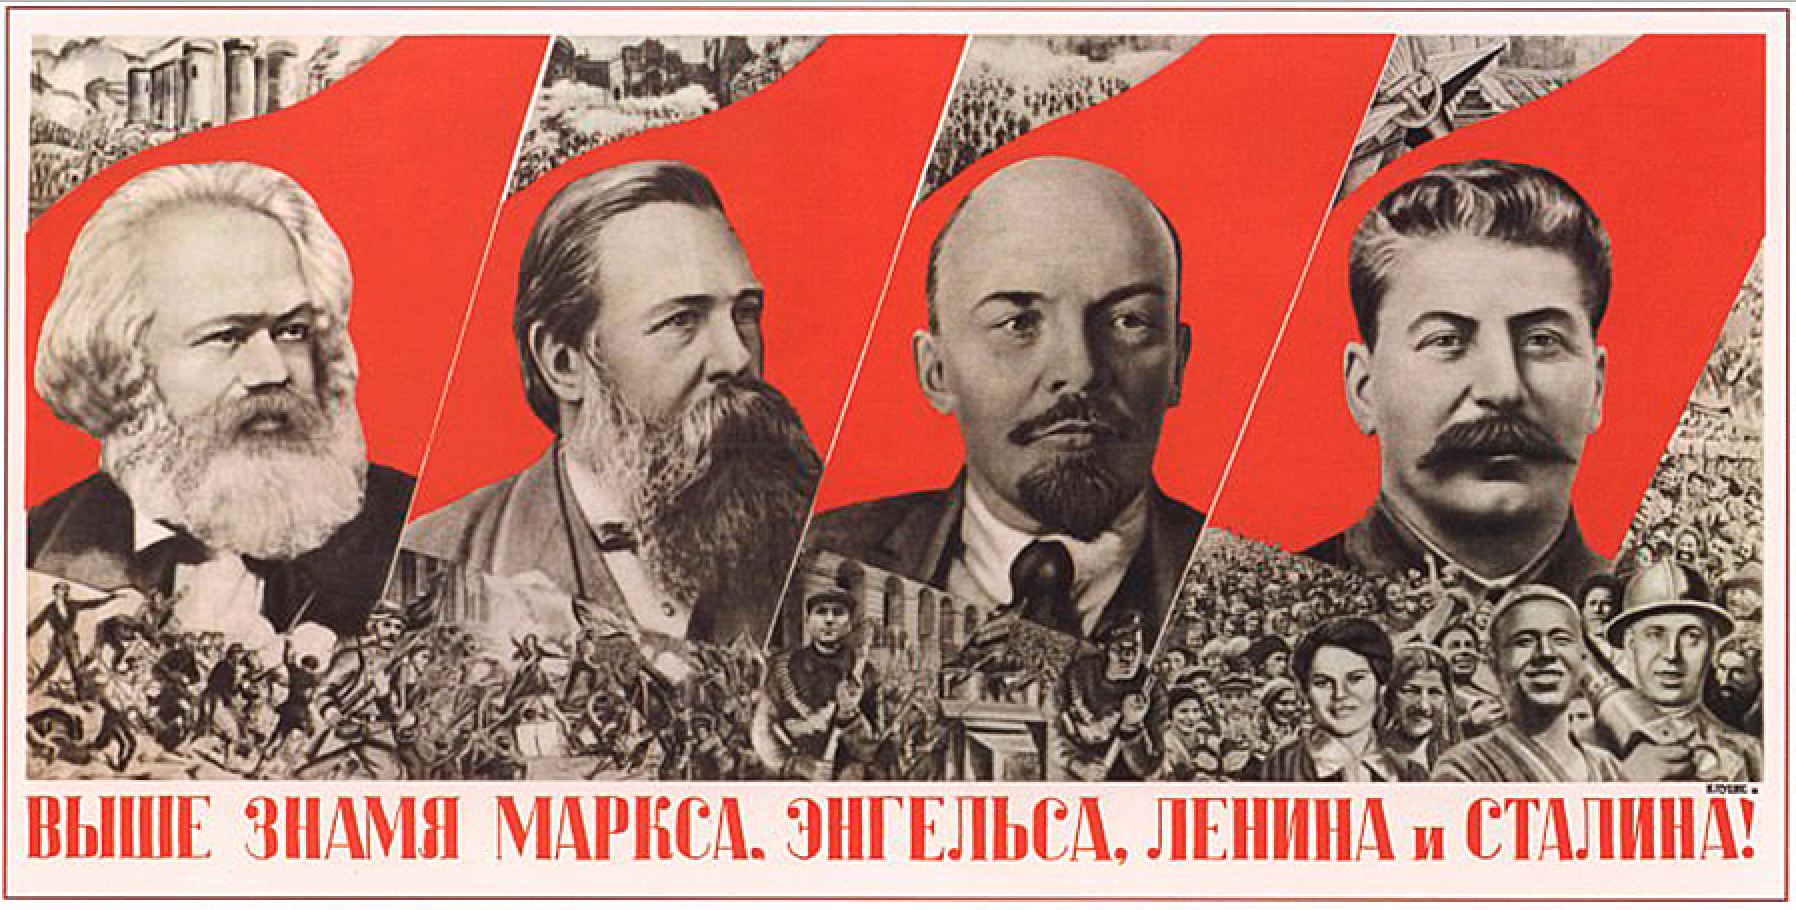 « Plus haut, le drapeau de Marx, Engels, Lénine et Staline ! »